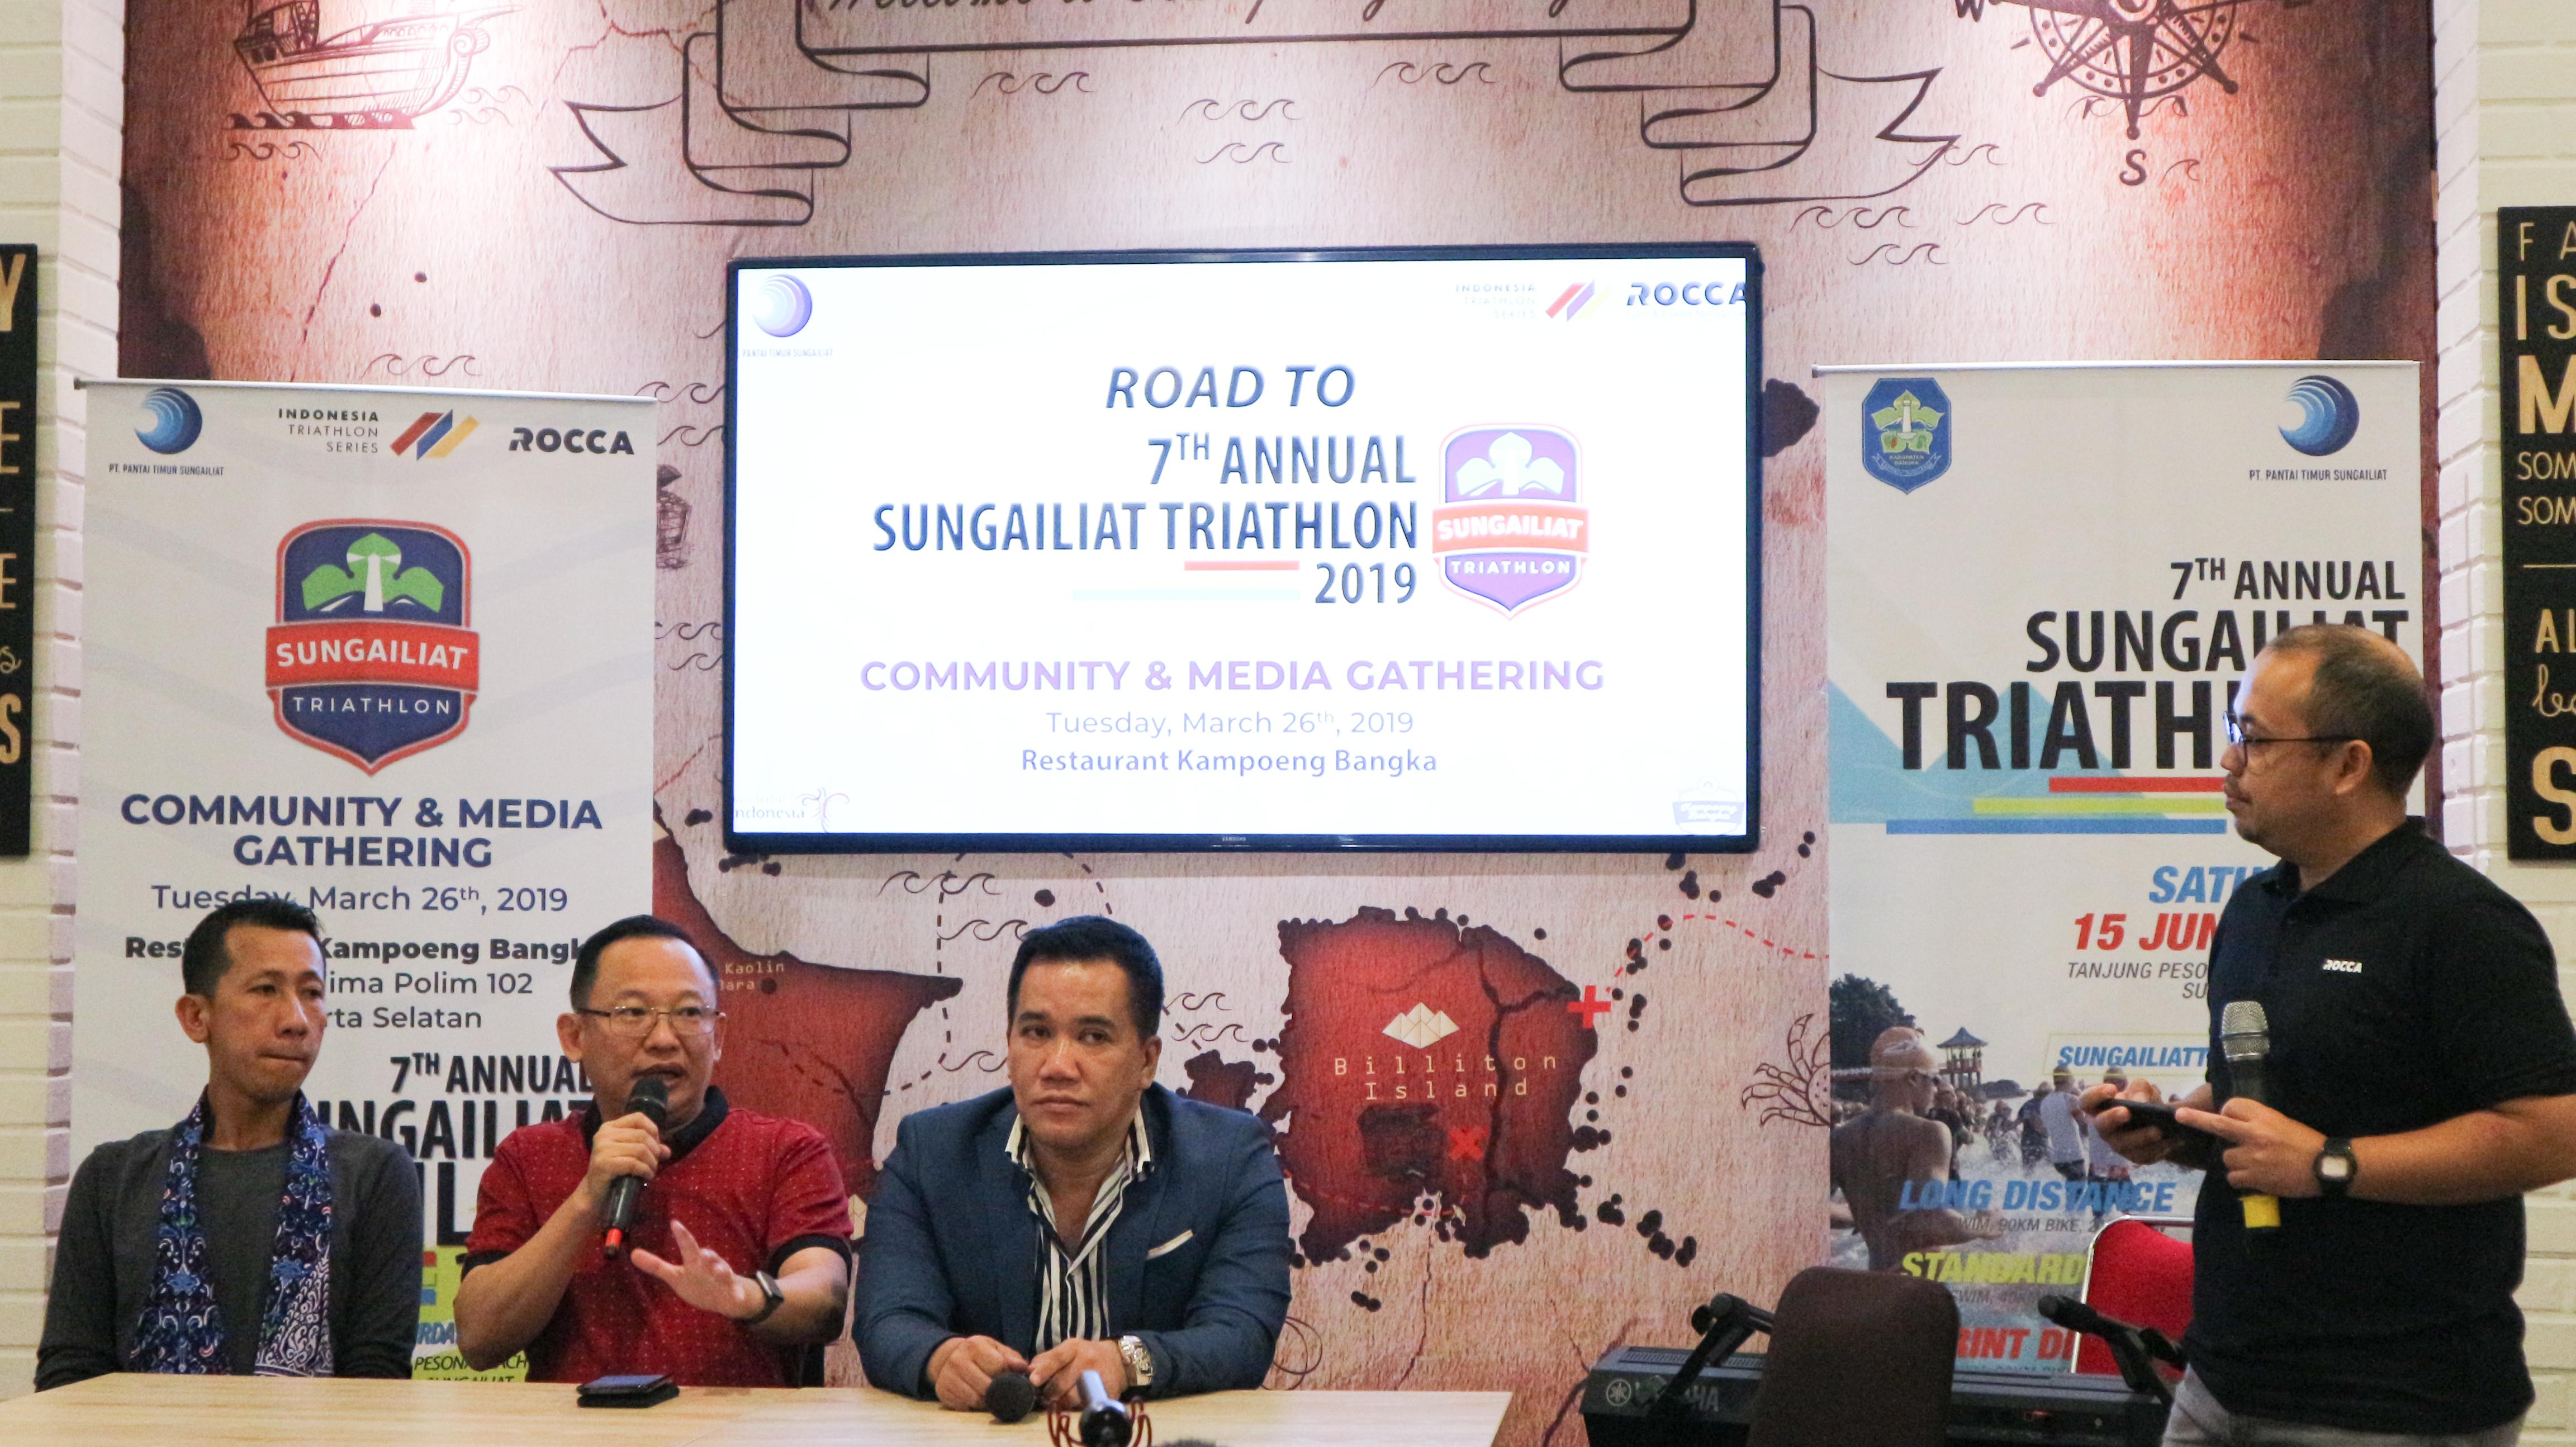 Launching Indonesia Triathlon Series & Road to 7 Annual Sungailiat Triathlon 2019 - INDOSPORT